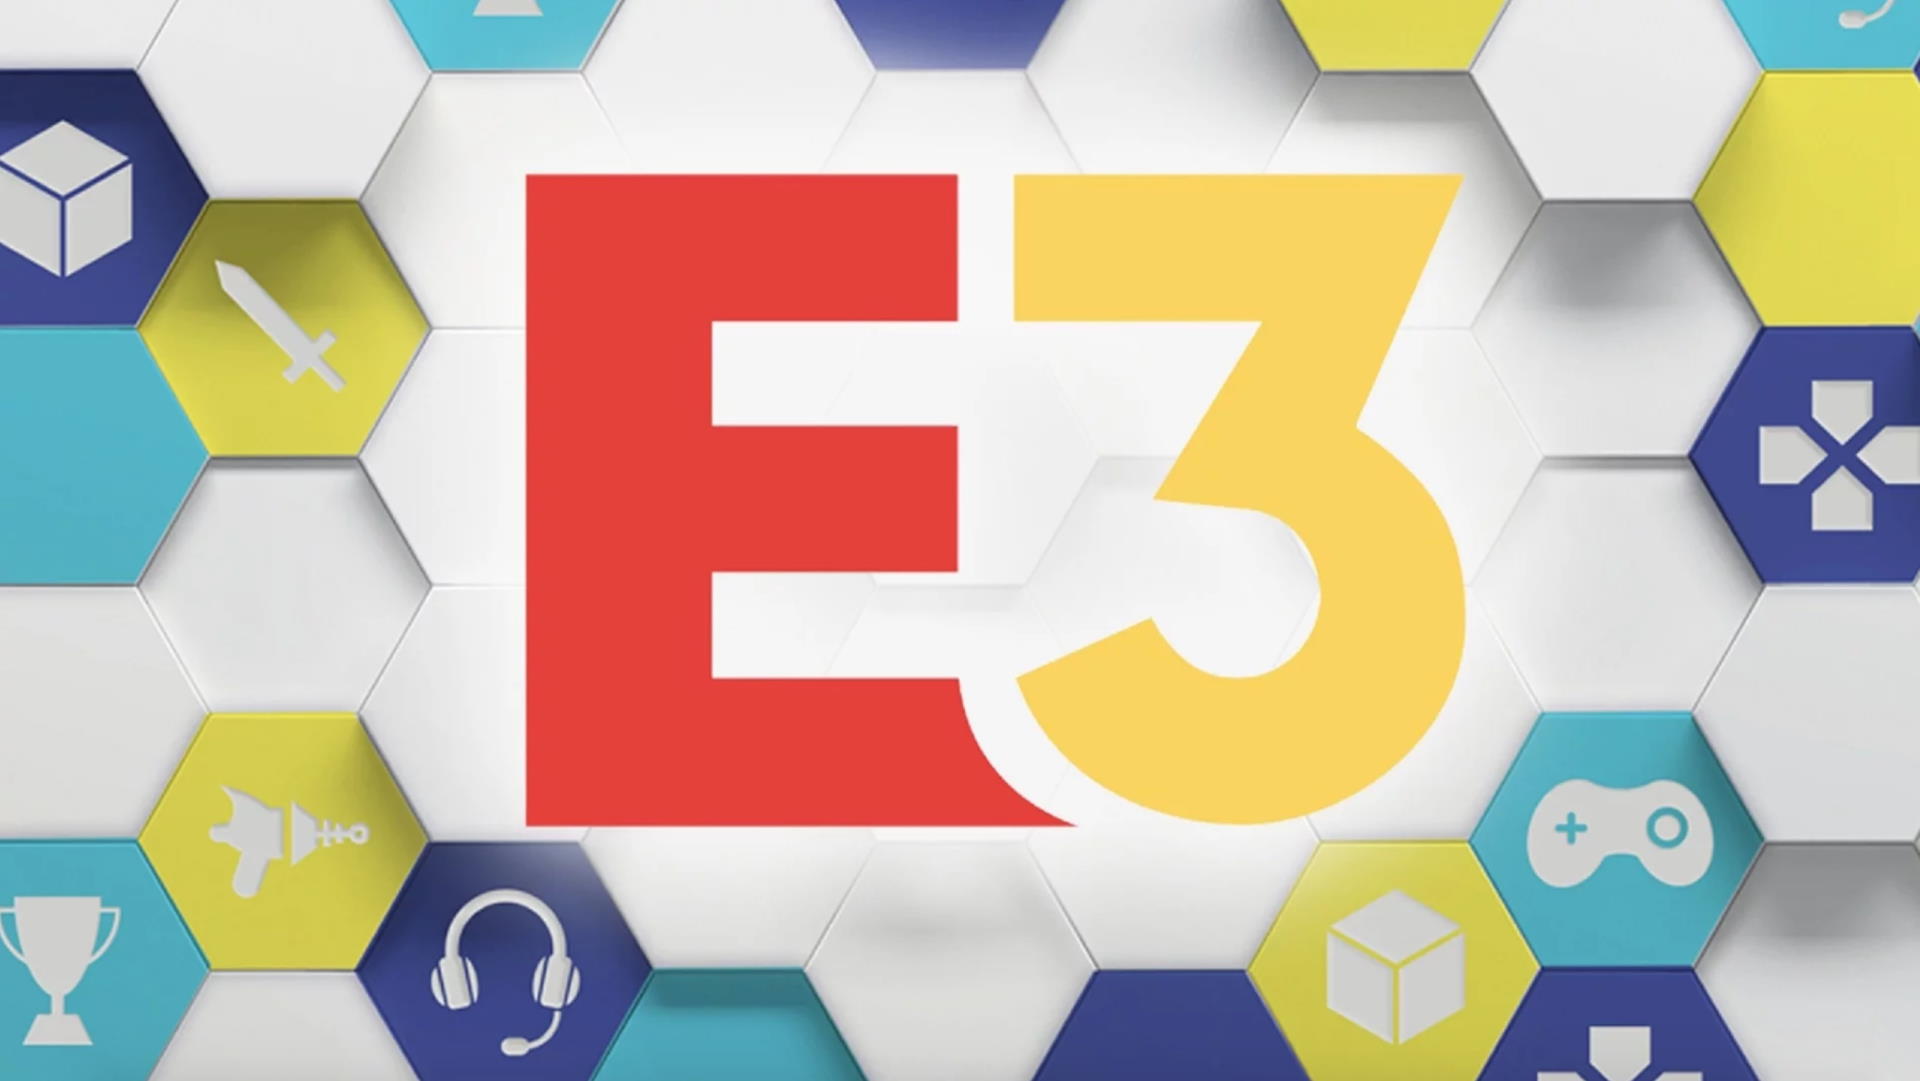 Targi E3 2021 odbędą się online